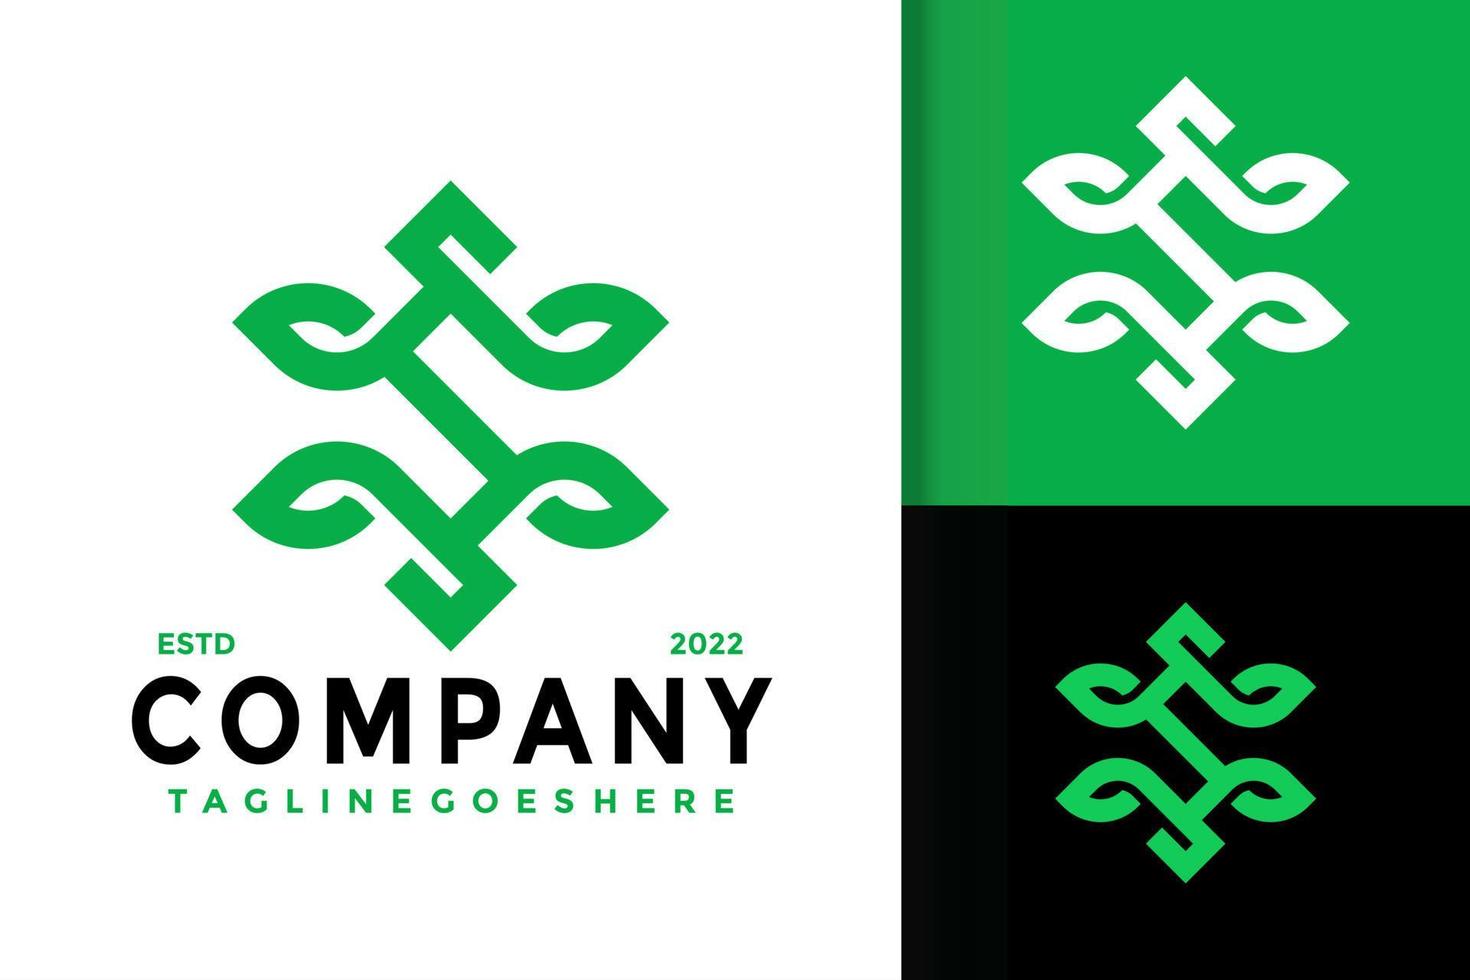 création de logo d'entreprise feuille nature lettre s, vecteur de logos d'identité de marque, logo moderne, modèle d'illustration vectorielle de dessins de logo